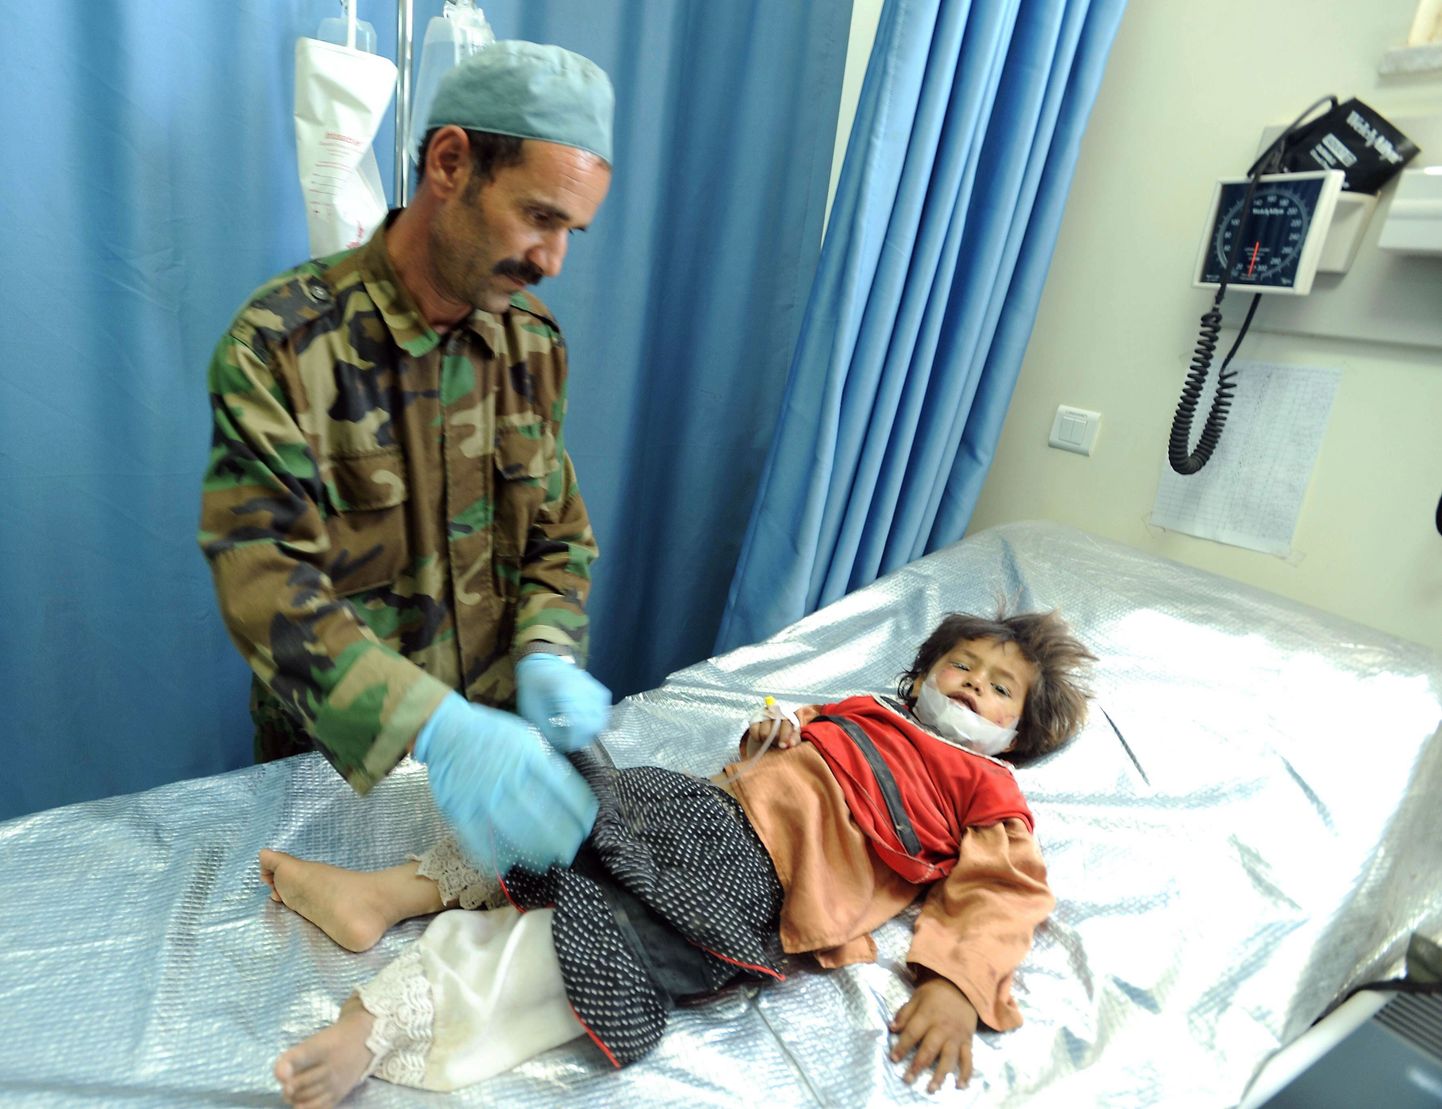 Palju sagedamini kui NATO sõdurid kannatavad afganistani mässuliste pommides tavalised tsiviilisikud. Pildil on augustis Herati provintsis kärgatanud pommis viga saanud laps sõjaväehaiglas ravil.